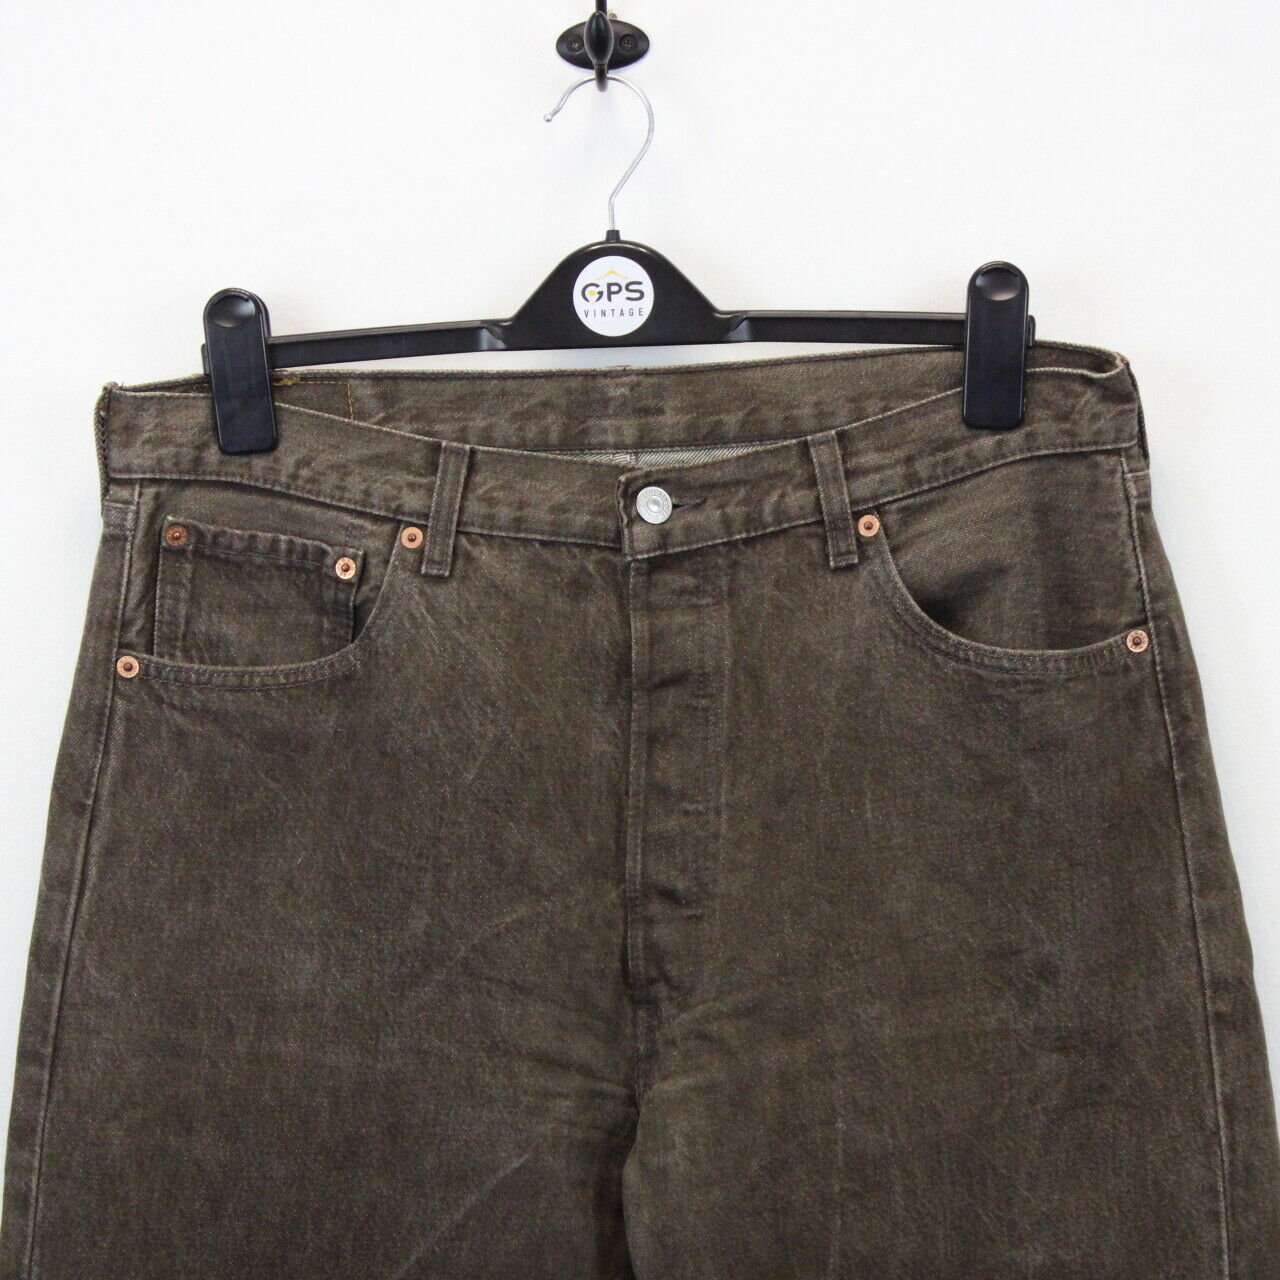 LEVIS 501 Jeans Brown | W36 L36